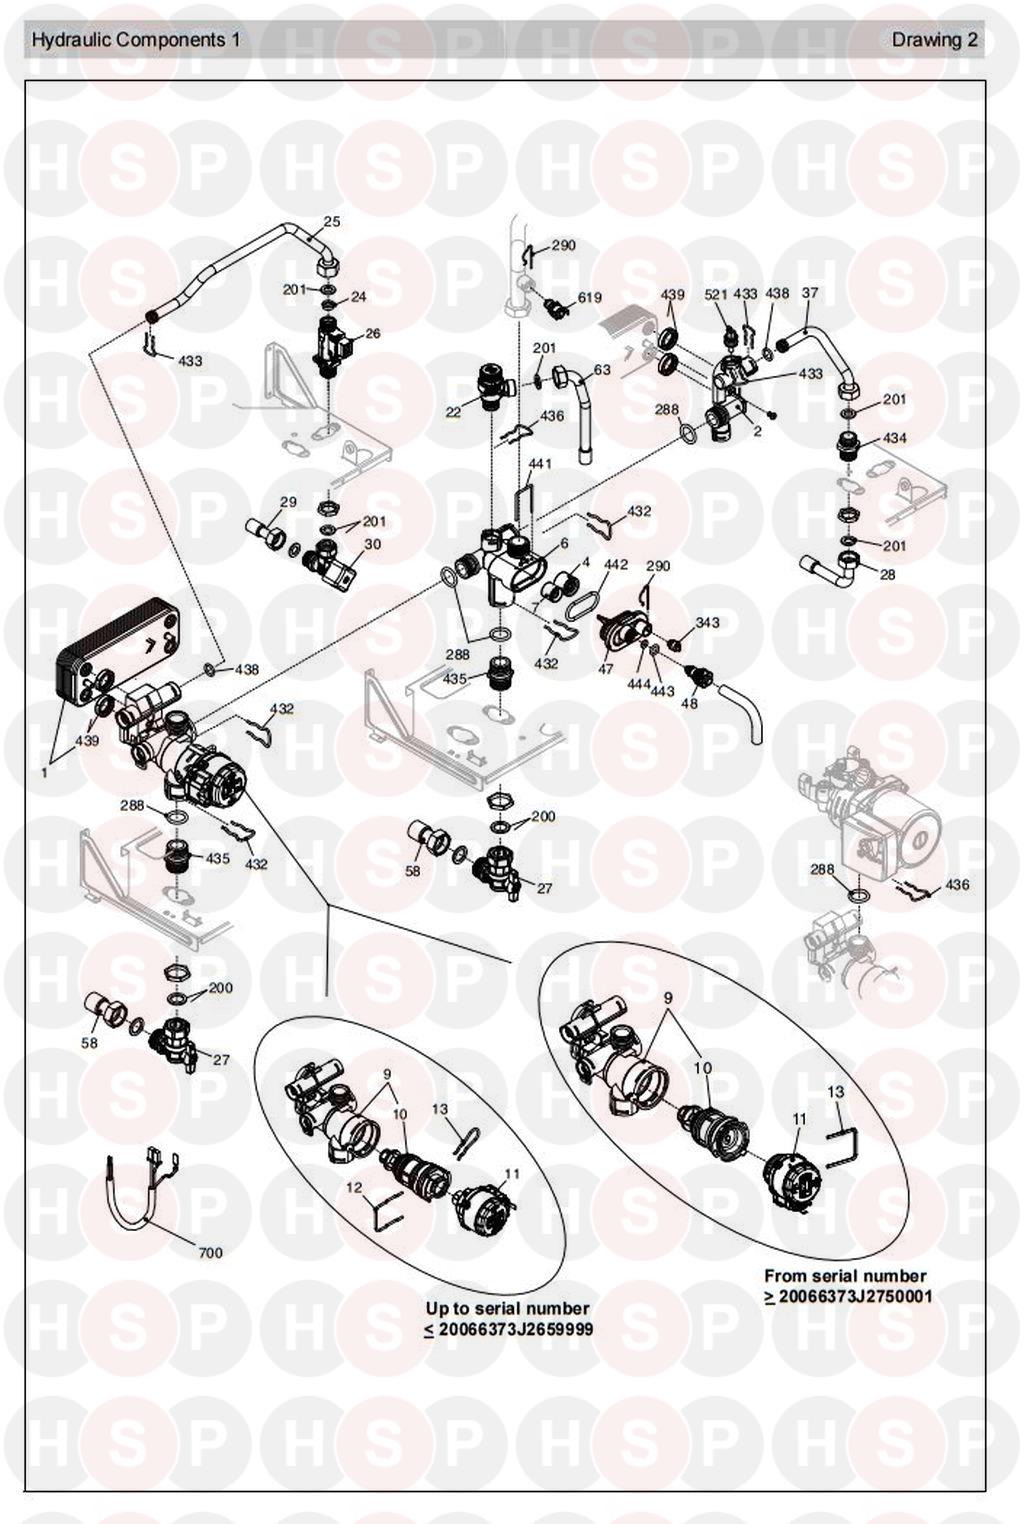 Hydraulics 1 diagram for Vokera Excel 29 Rev 4 (07/2014)